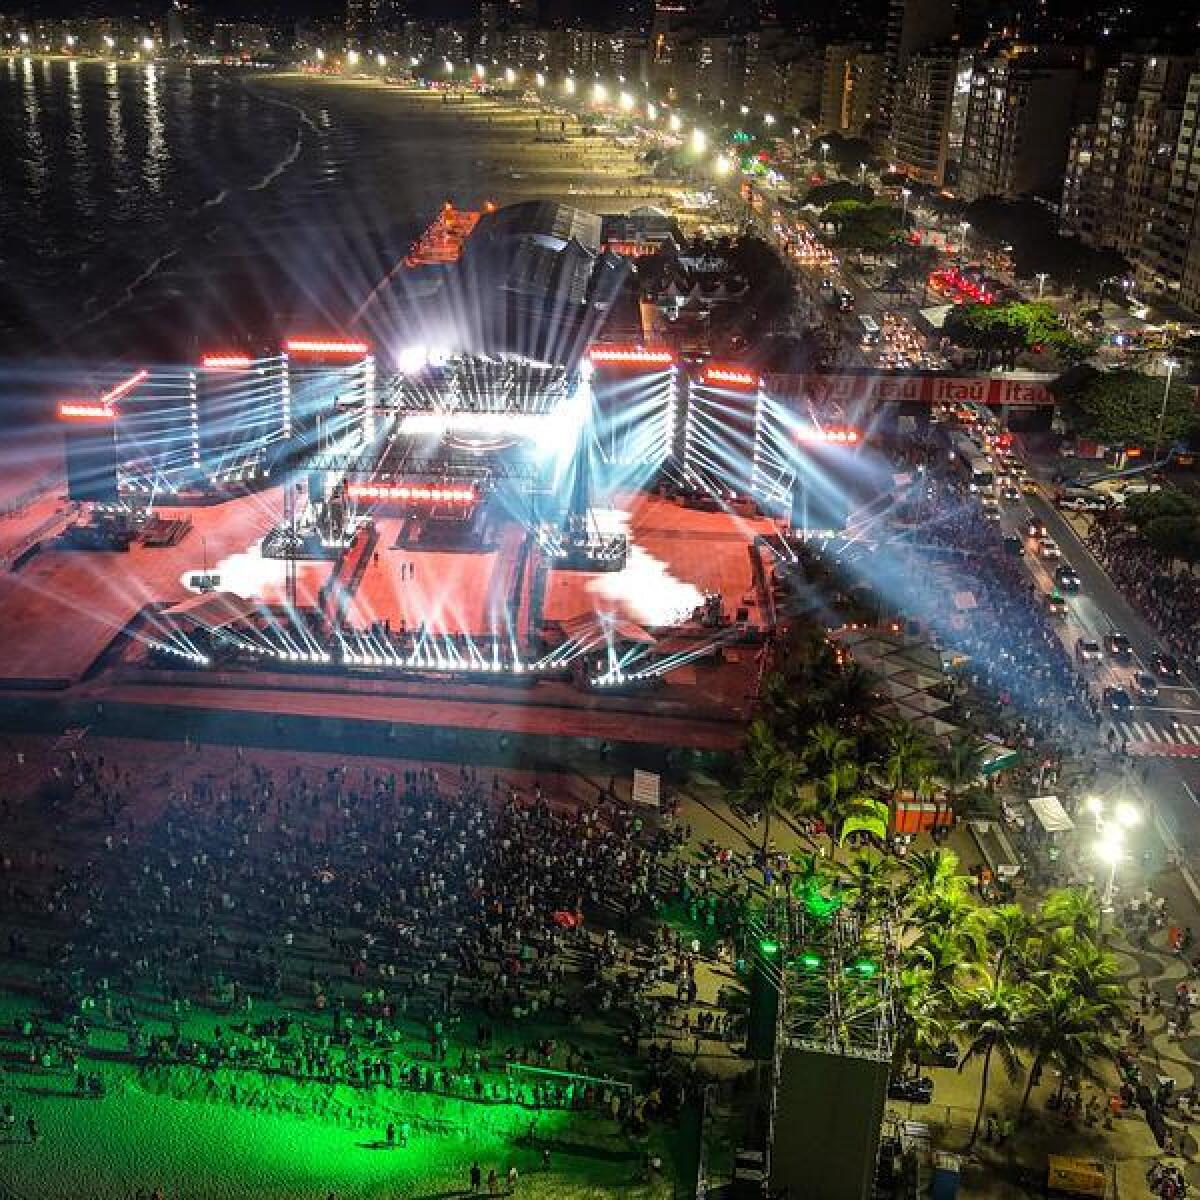 Madonna's concert in Rio de Janeiro